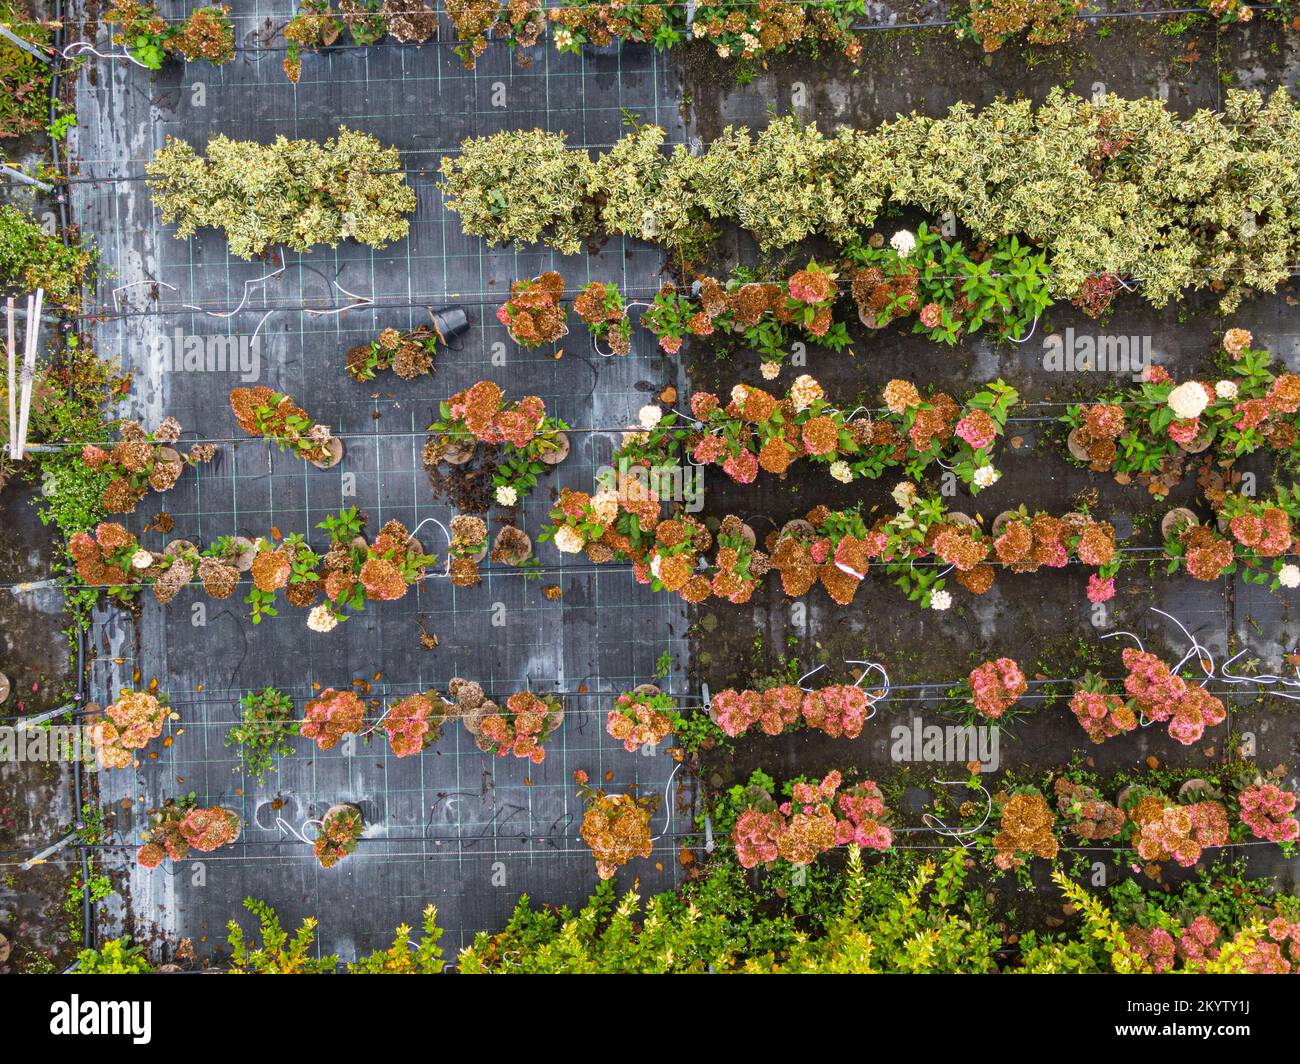 Vue aérienne d'une pépinière de plantes jaunes, rouges et vertes rouges, disposées en rangée, en automne. Plantes aux couleurs d'automne, Alsace, France, Europ Banque D'Images